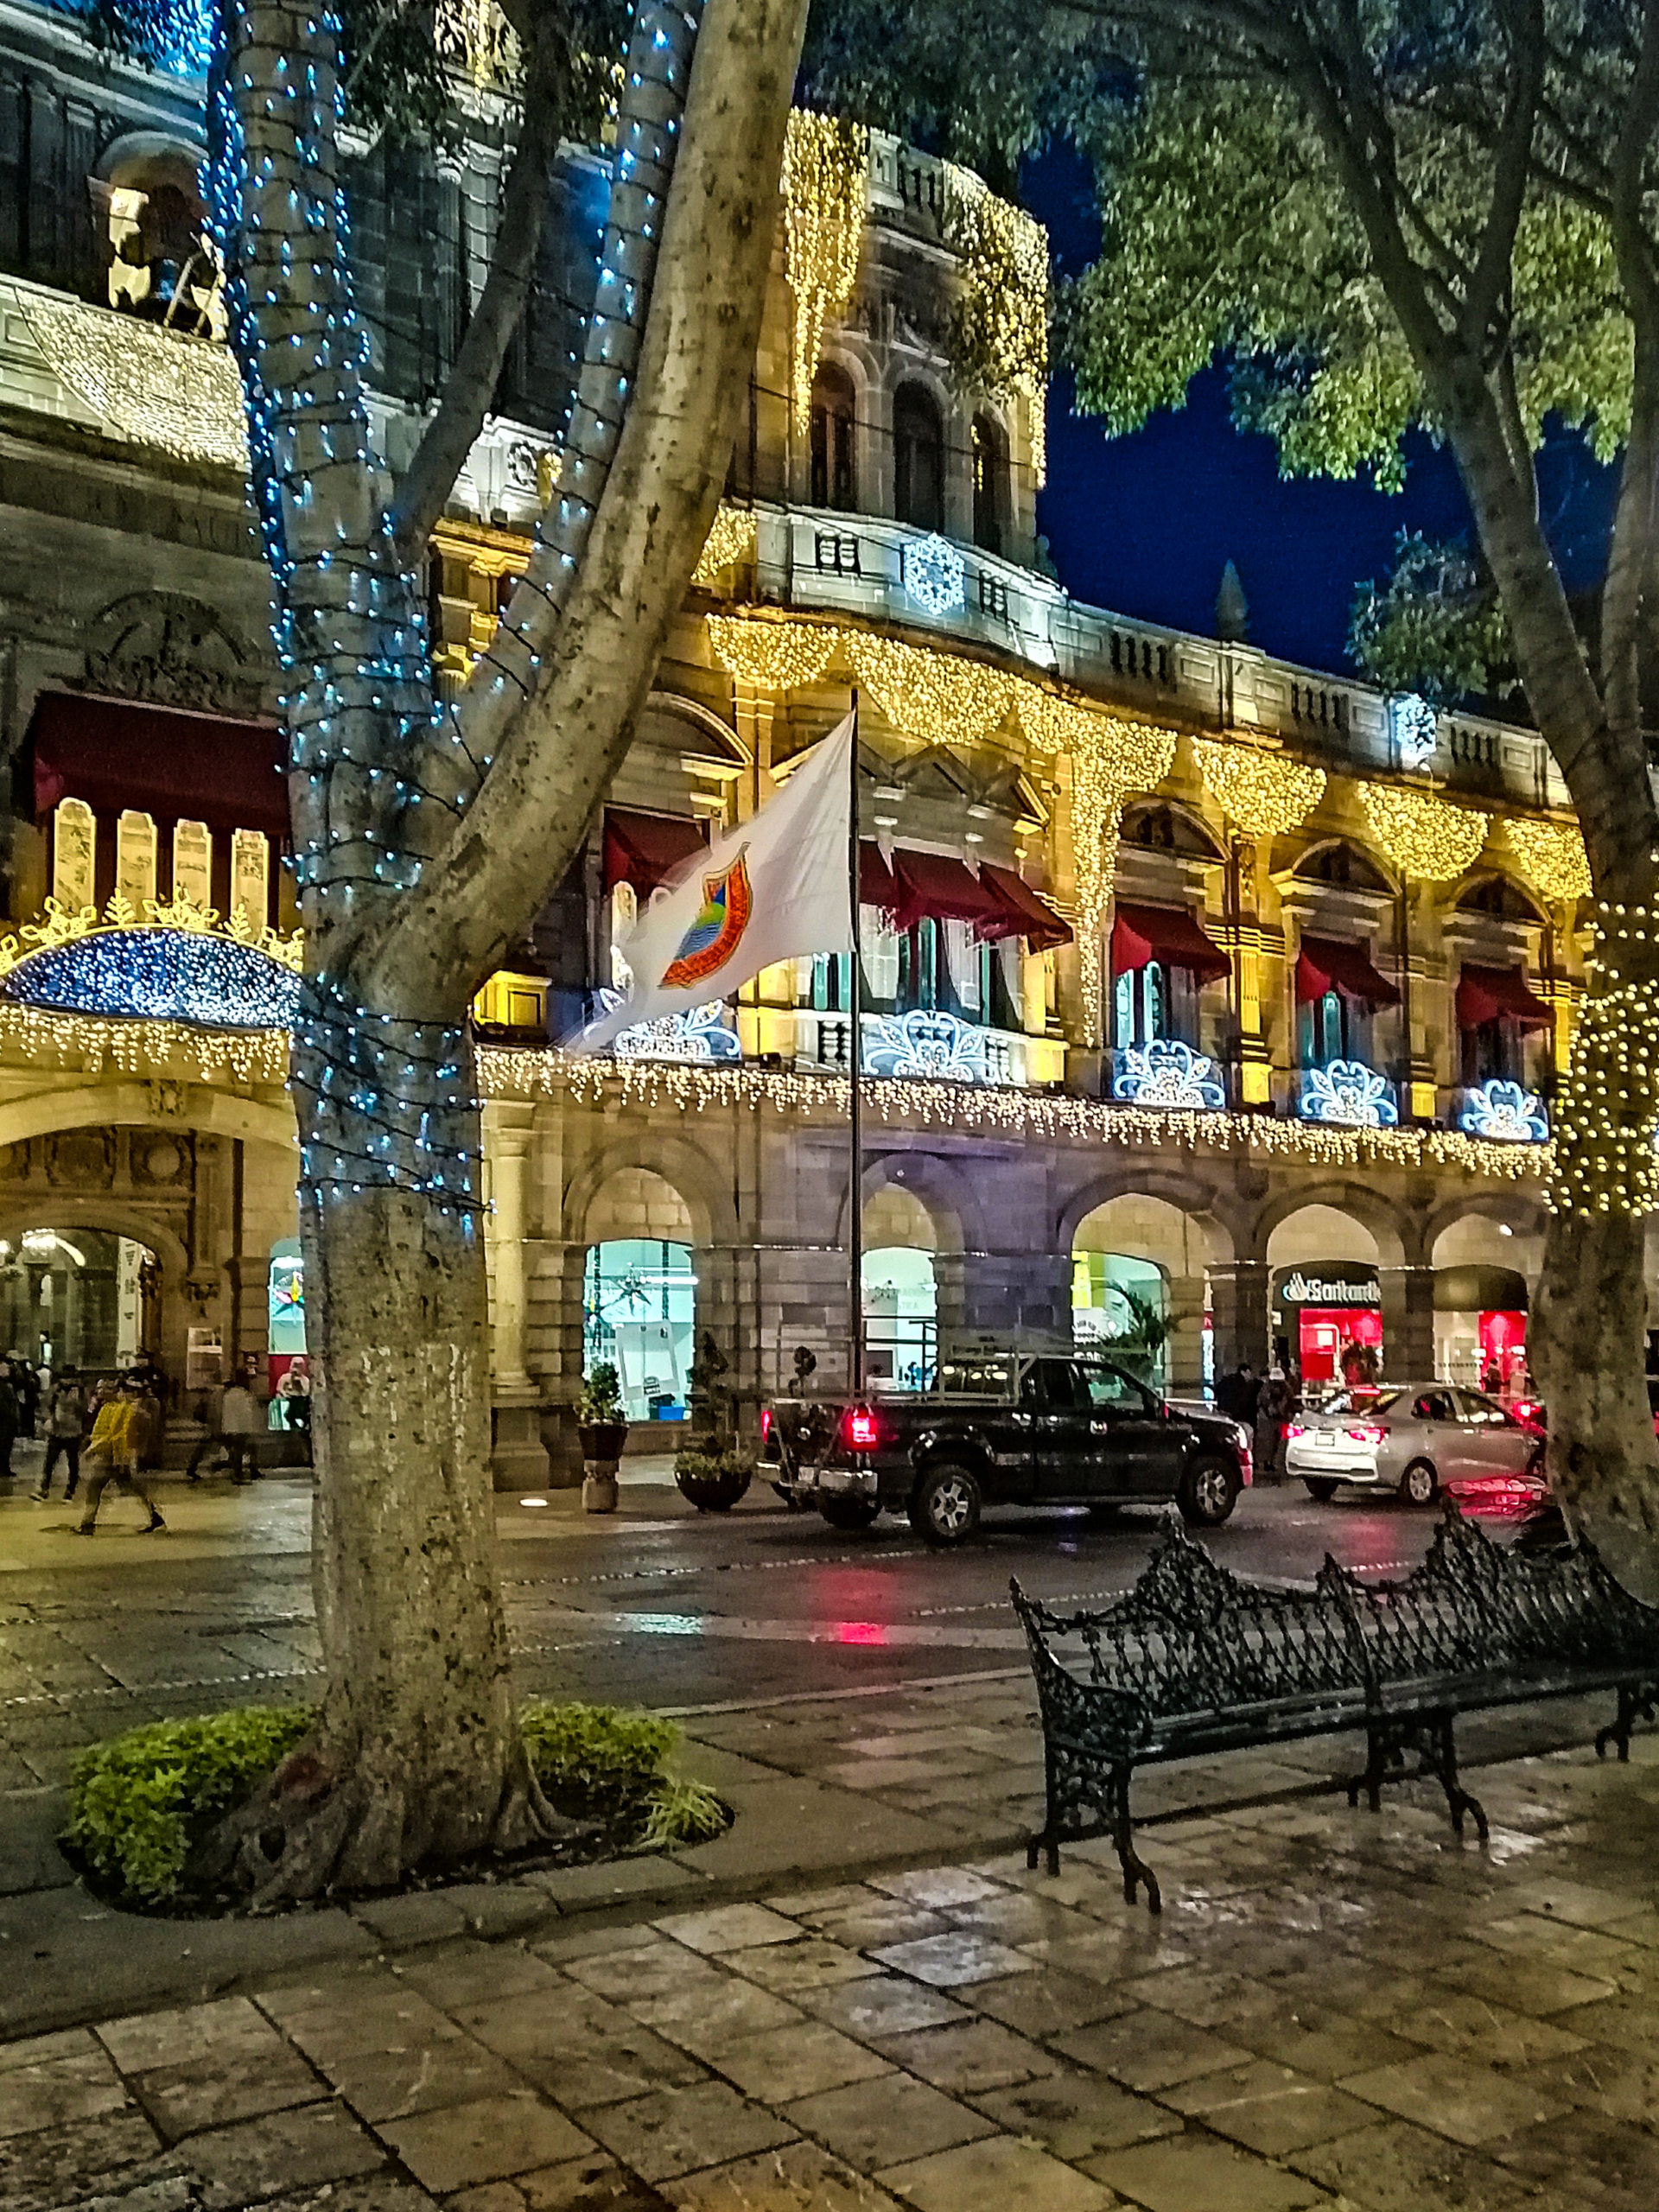 El Parque Central Centro histórico de Puebla, Puebla, México